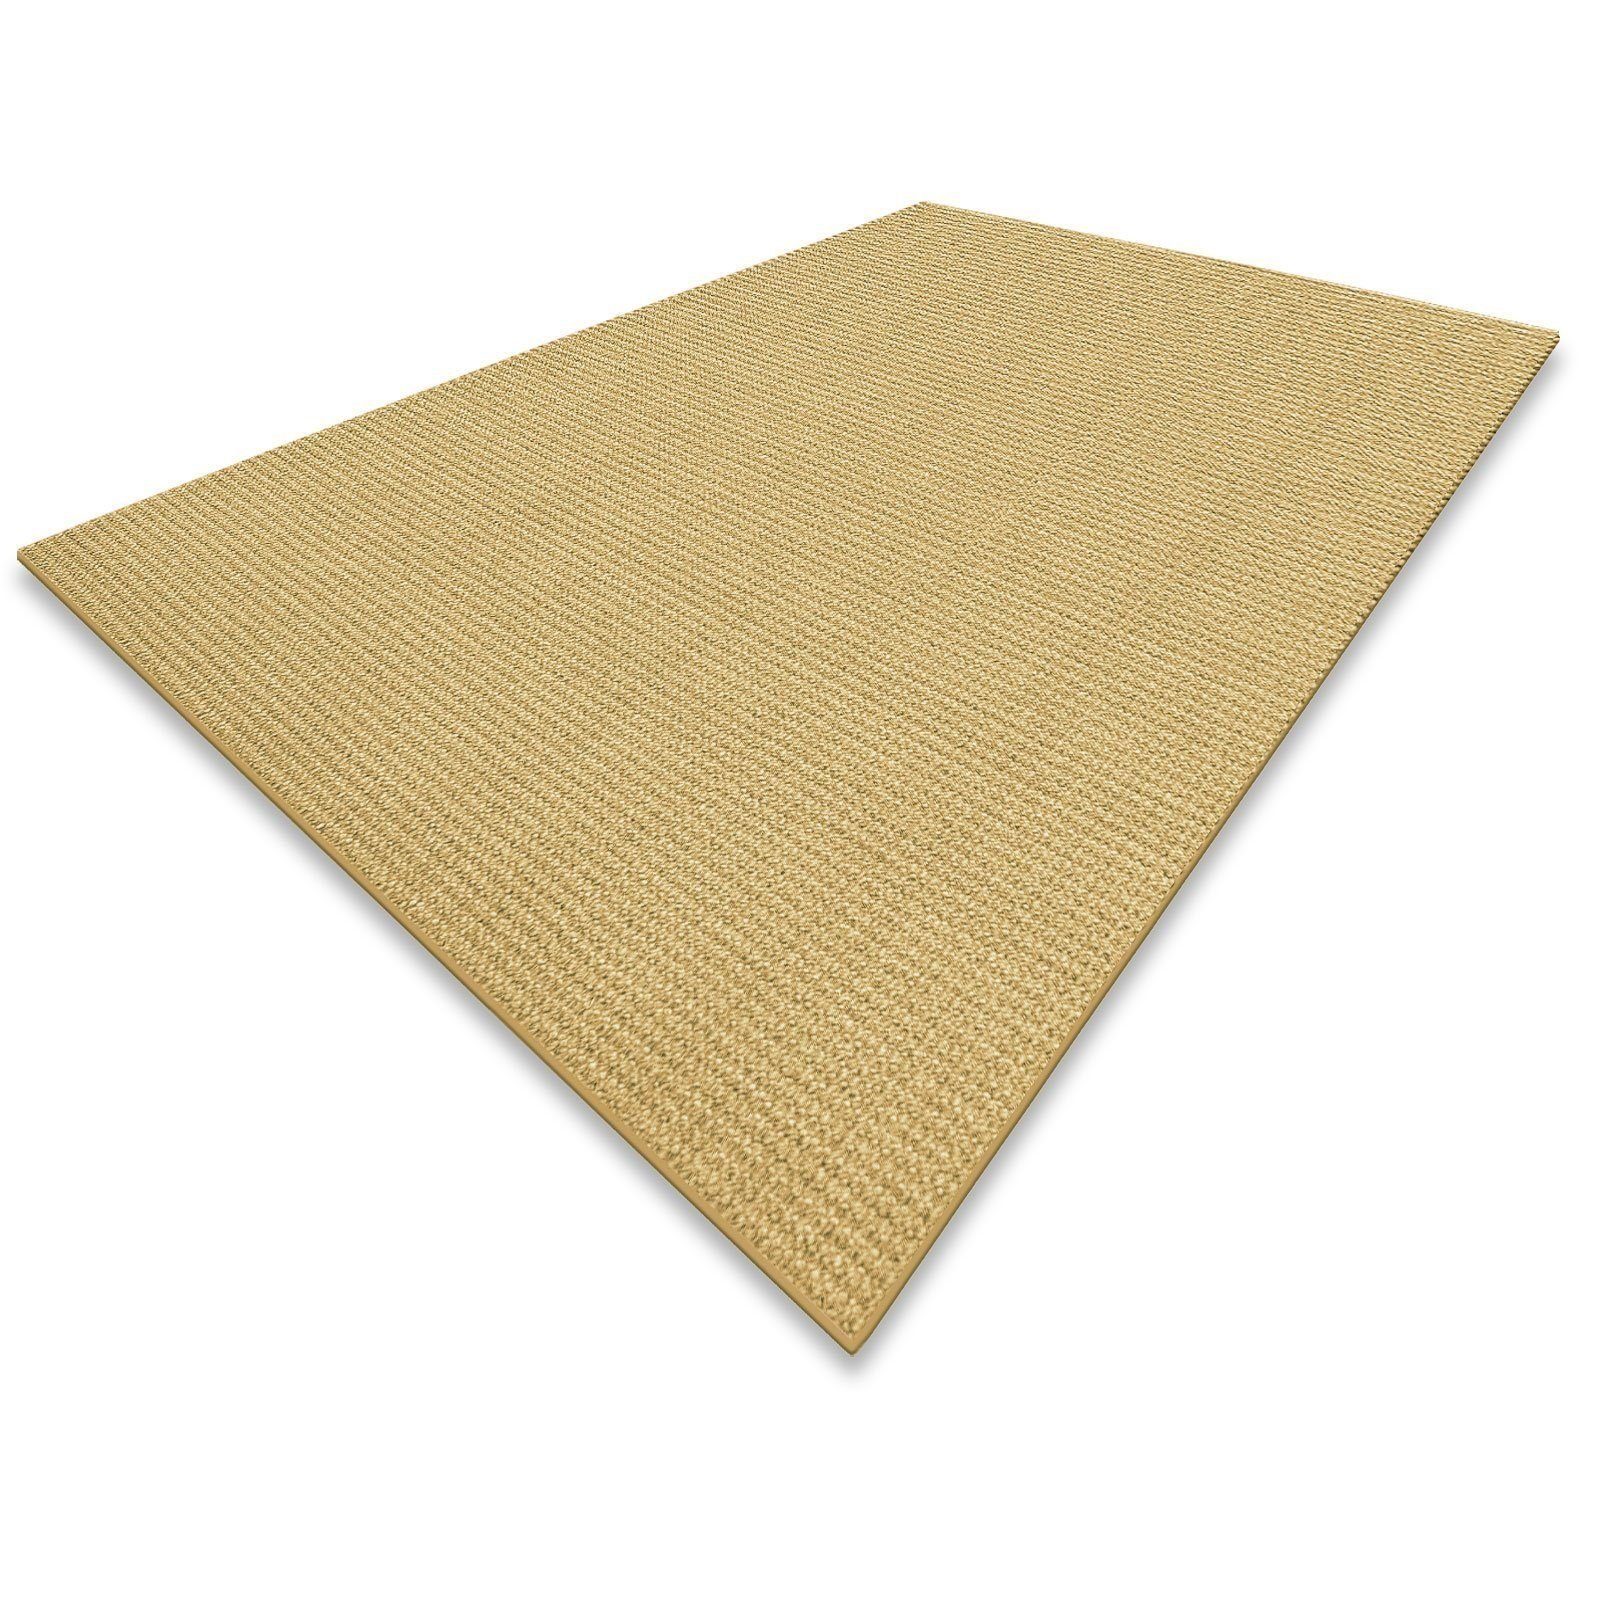 Sisalteppich Sylt Natur, Teppich erhältlich in 9 Größen, Teppichläufer, Floordirekt, Eckig, Höhe: 6 mm, Eckig